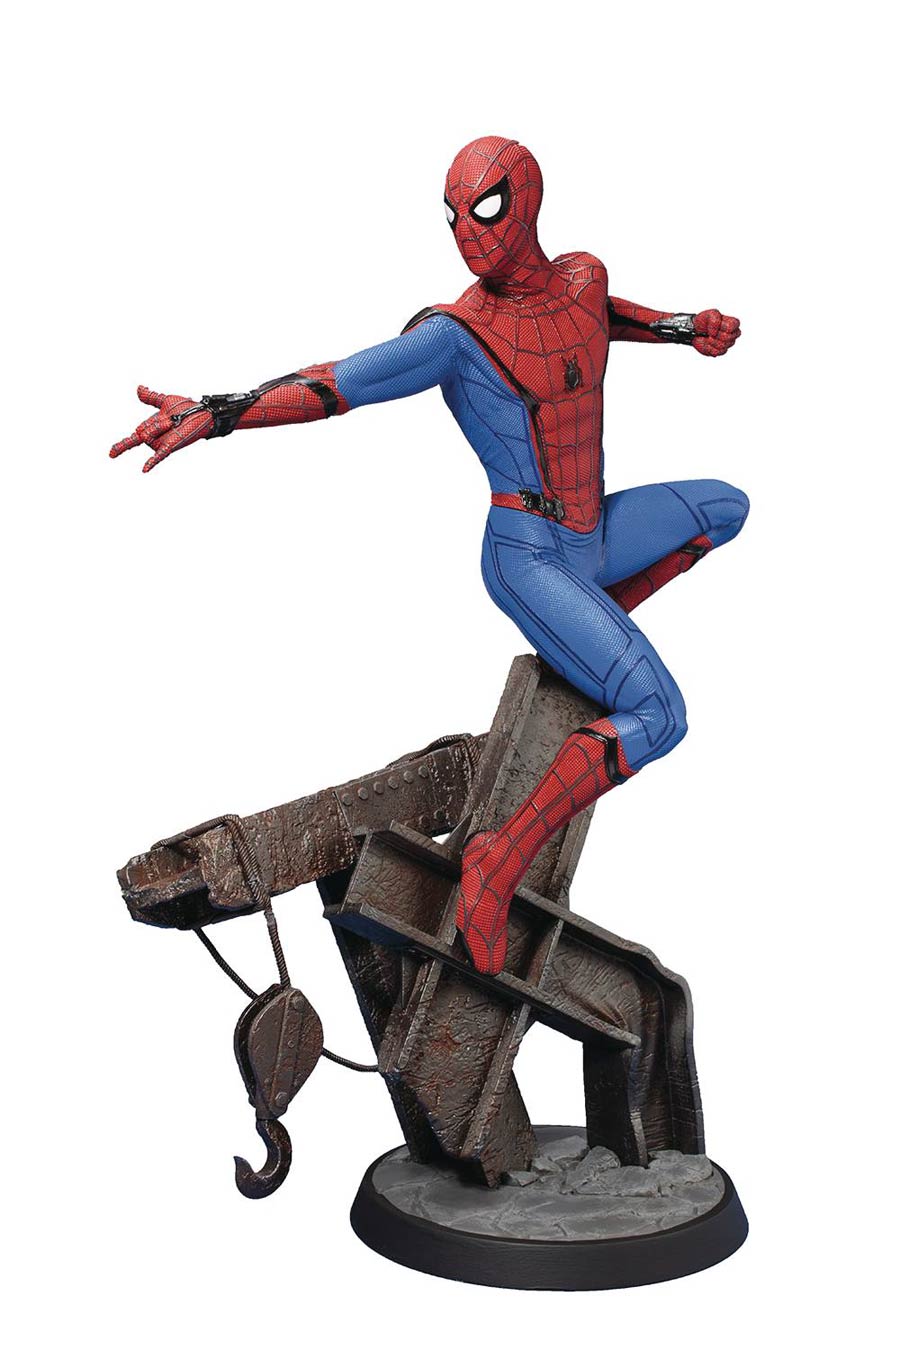 Spider-Man Homecoming Spider-Man ARTFX Statue